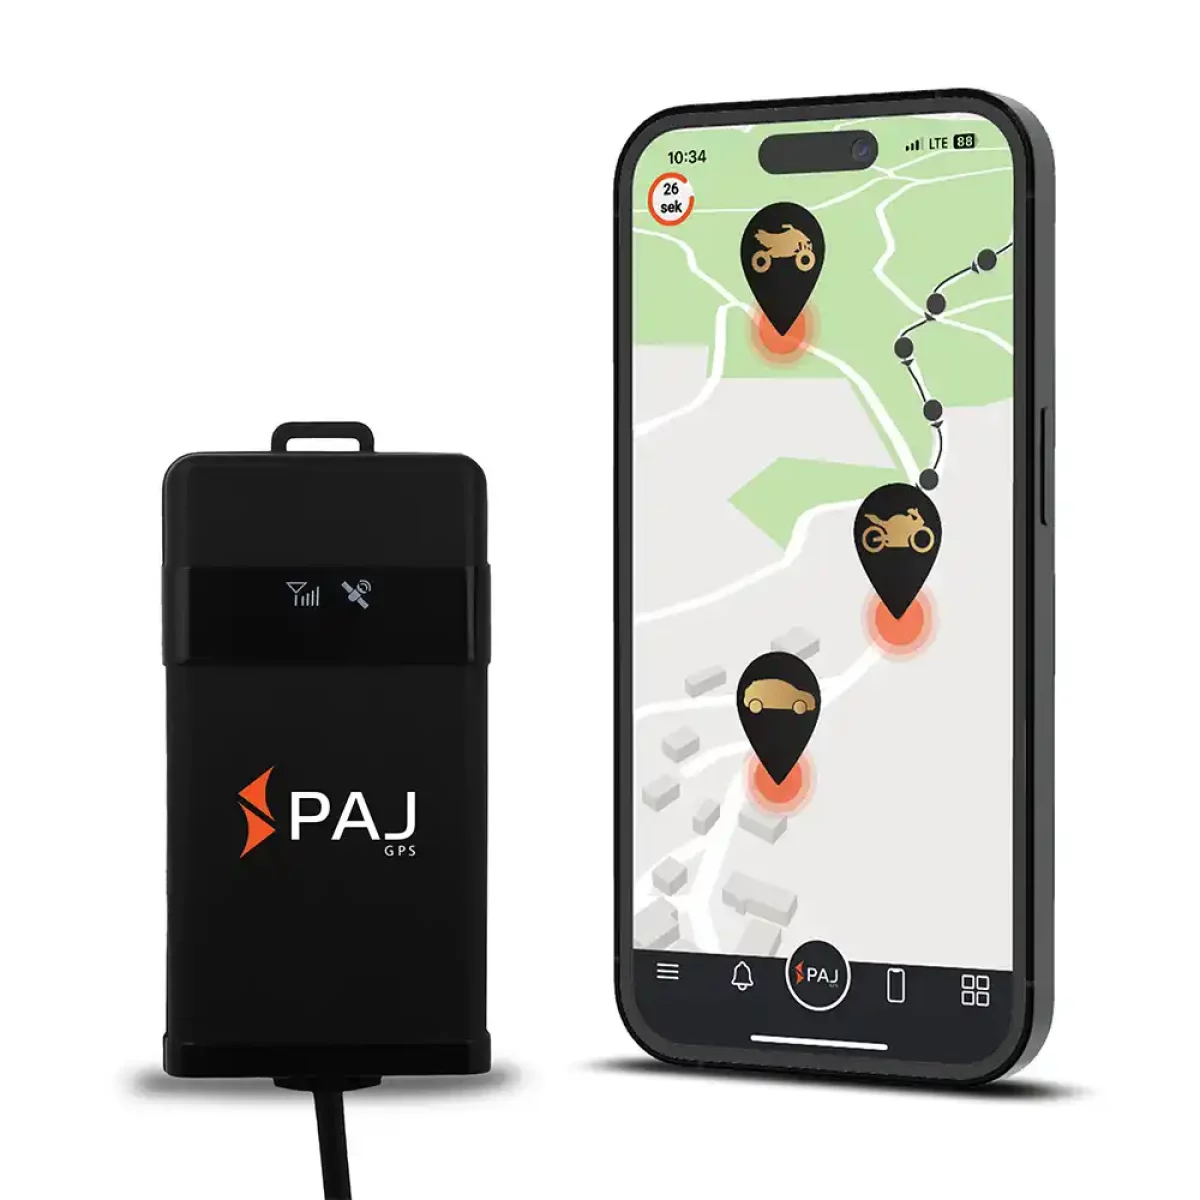 PAJ GPS Allround Finder (2019-Version) Test & Vergleich 2021